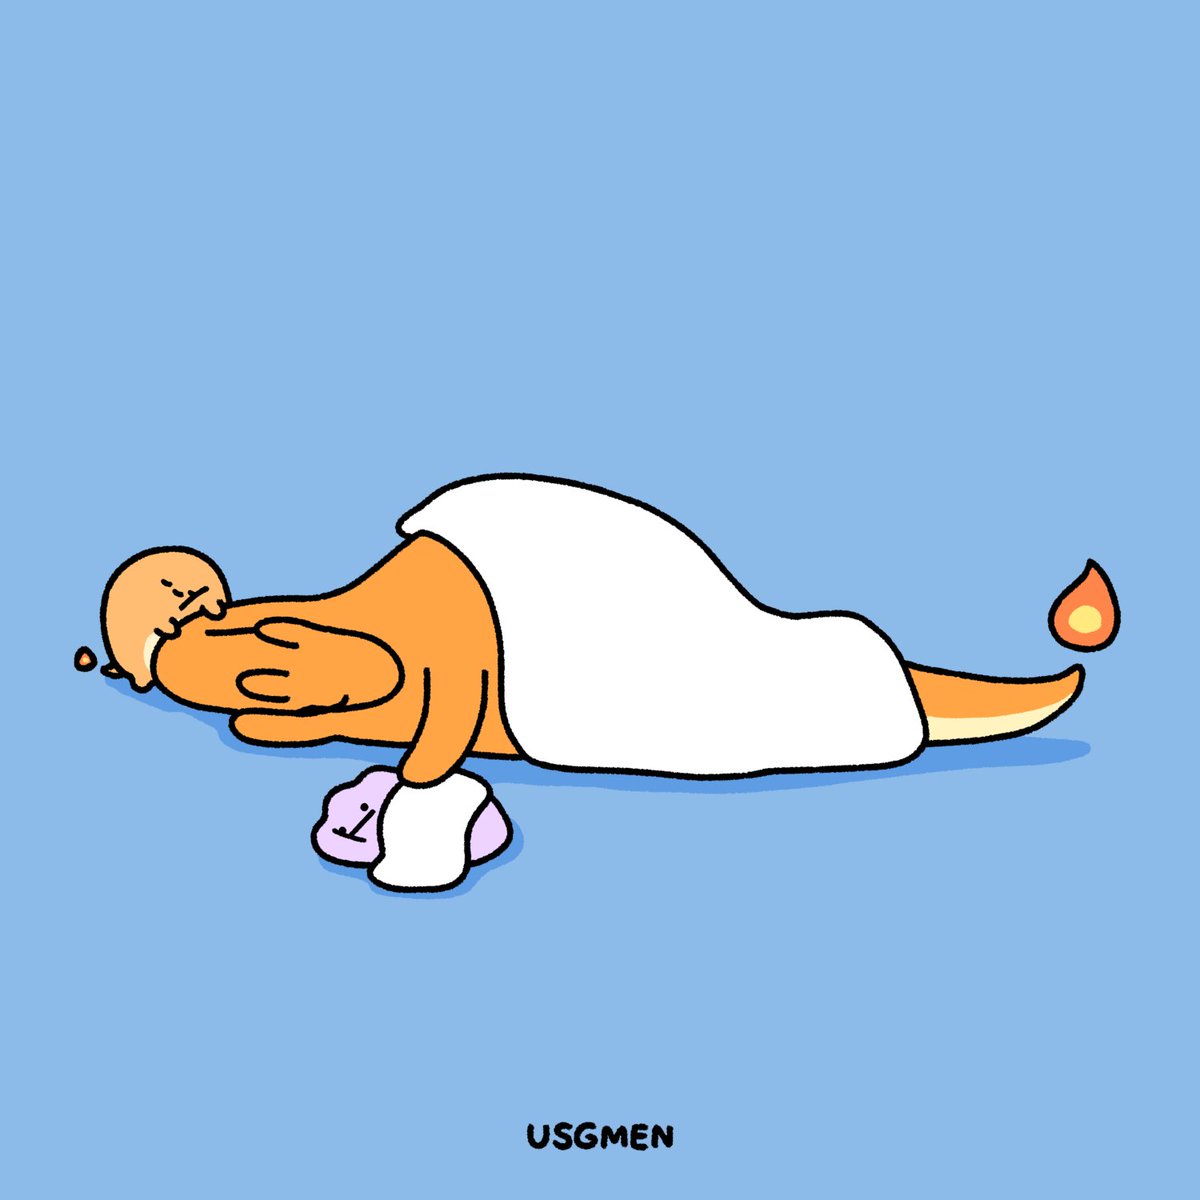 ヒトカゲ 「と思ったら寝かし付けられてたリザードン 」|USGMEN（うさぎメン）のイラスト